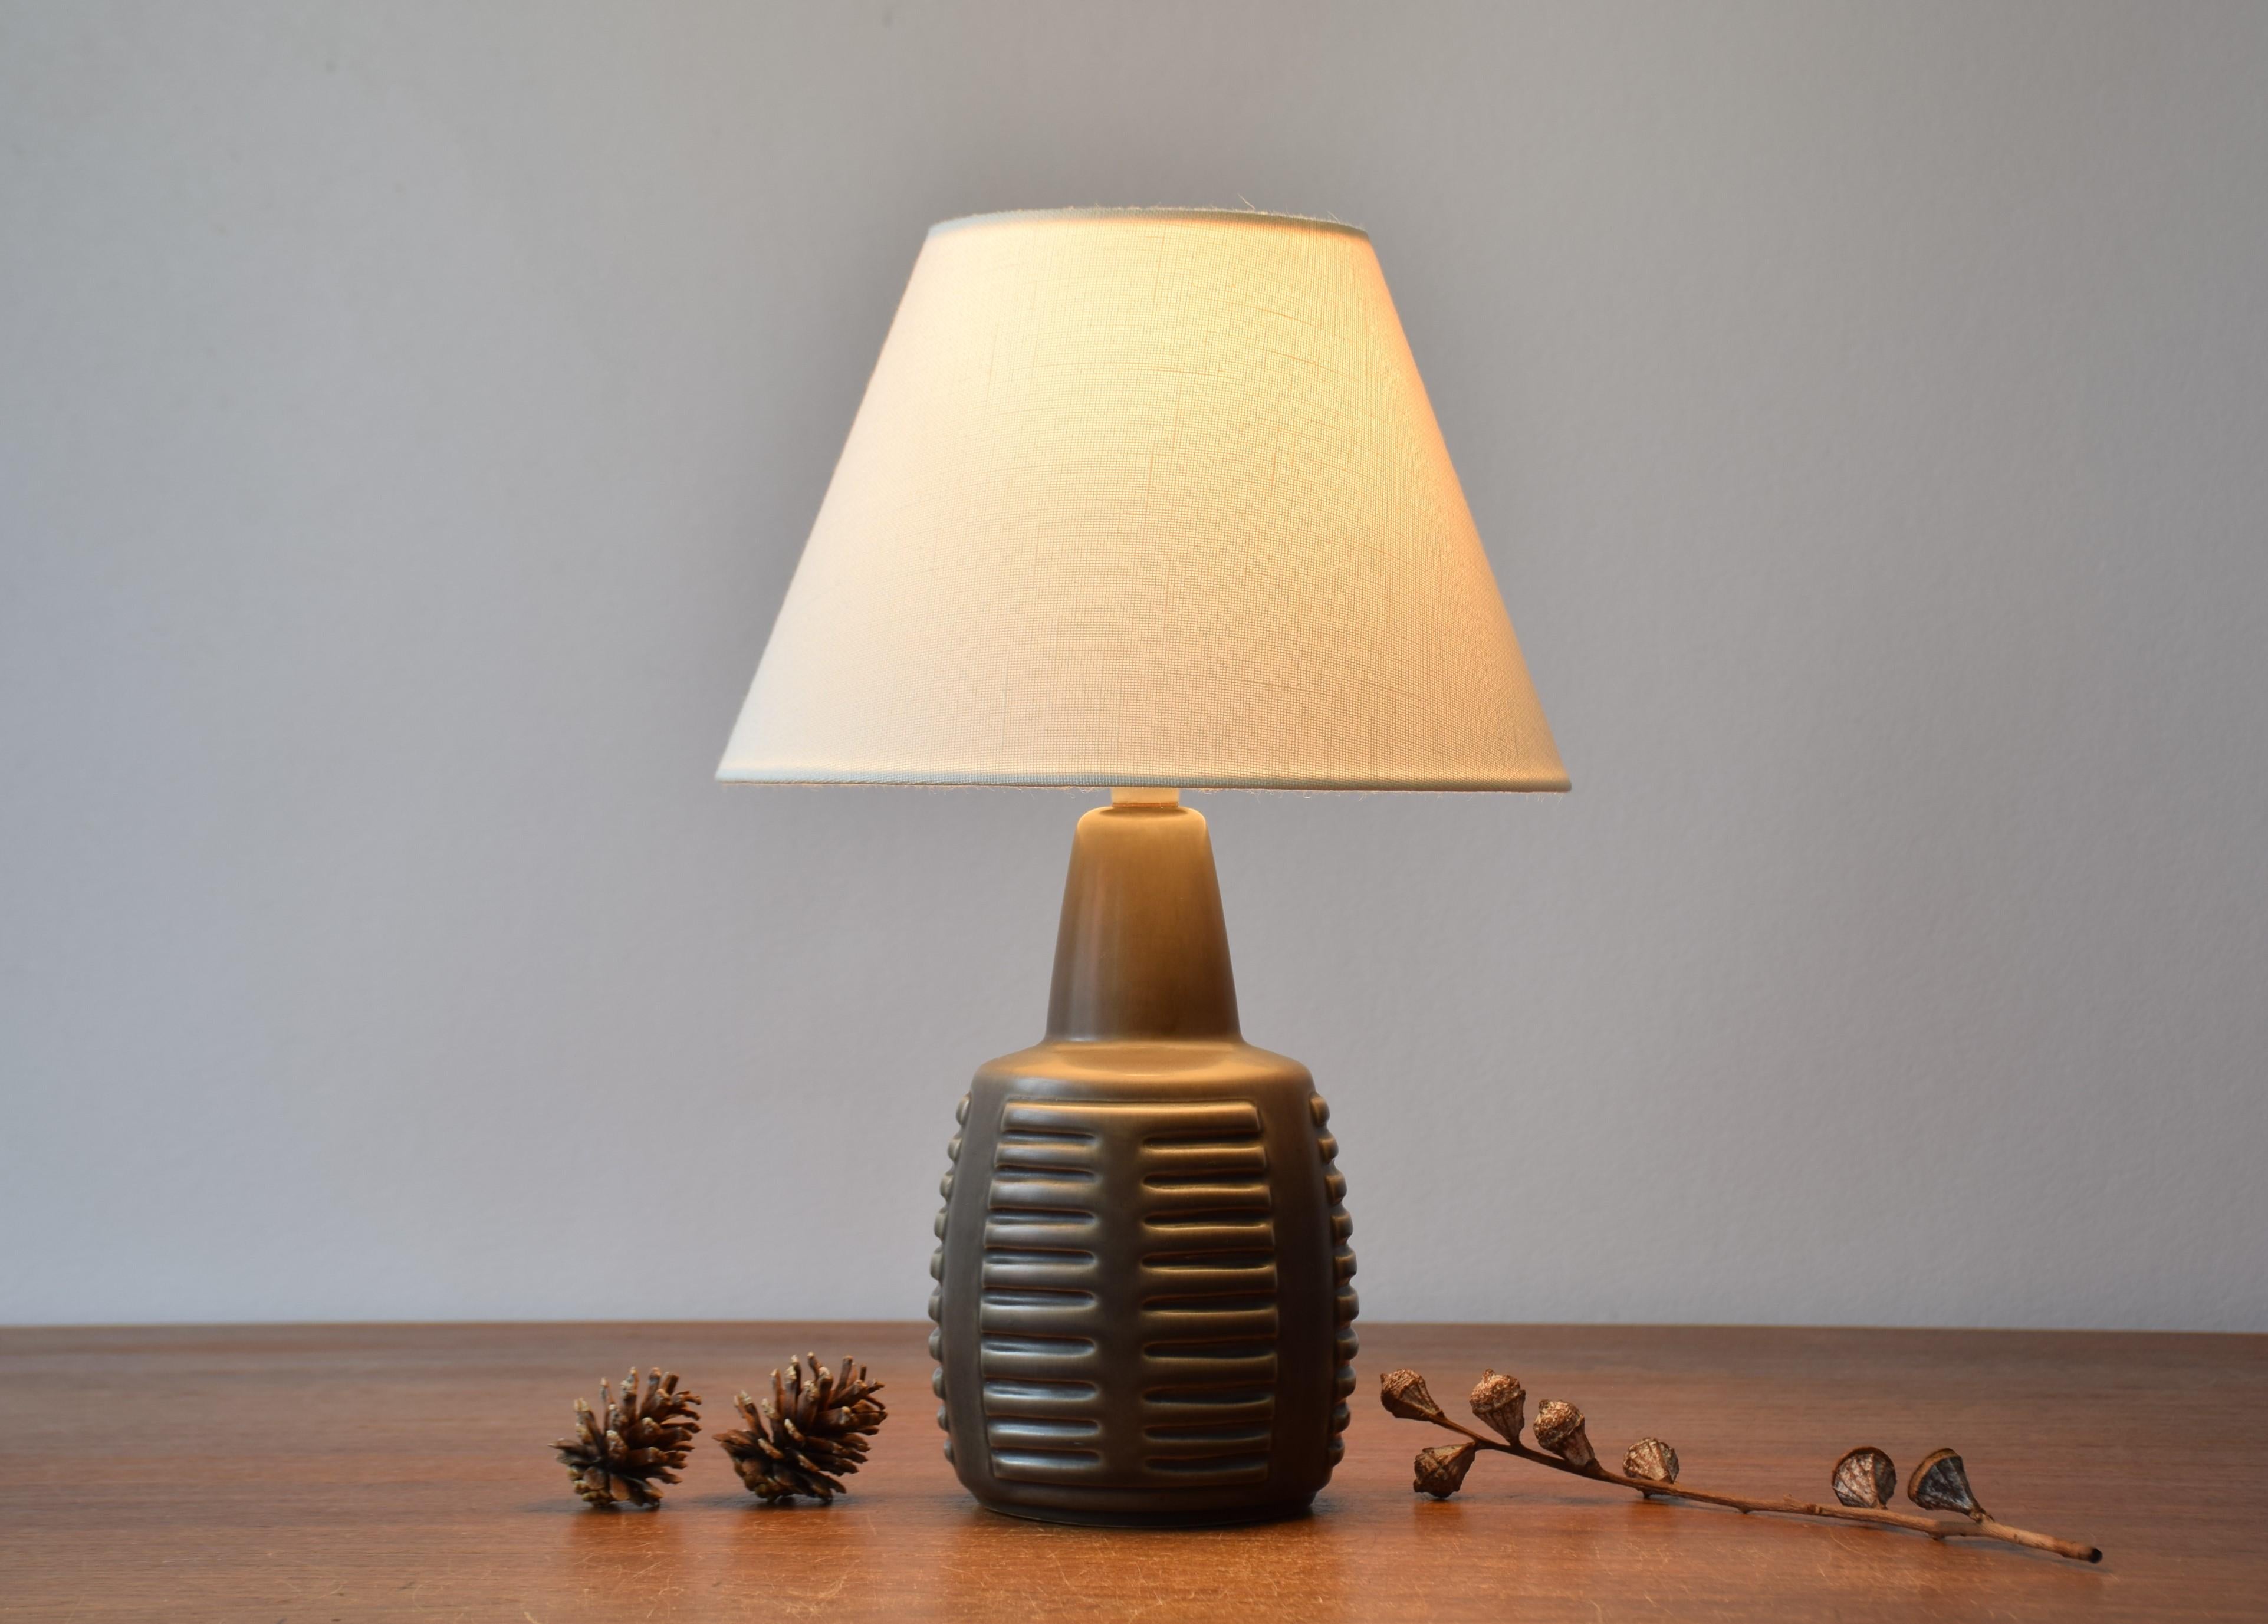 Kleine Keramik-Tischlampe von Einar Johansen für Søholm Stentøj, Dänemark, um 1960. Perfekt als Nachttischlampe.

Die Lampe hat eine braune Staubglasur.

Im Lieferumfang enthalten sind neue, in Dänemark entworfene und hergestellte Lampenschirme